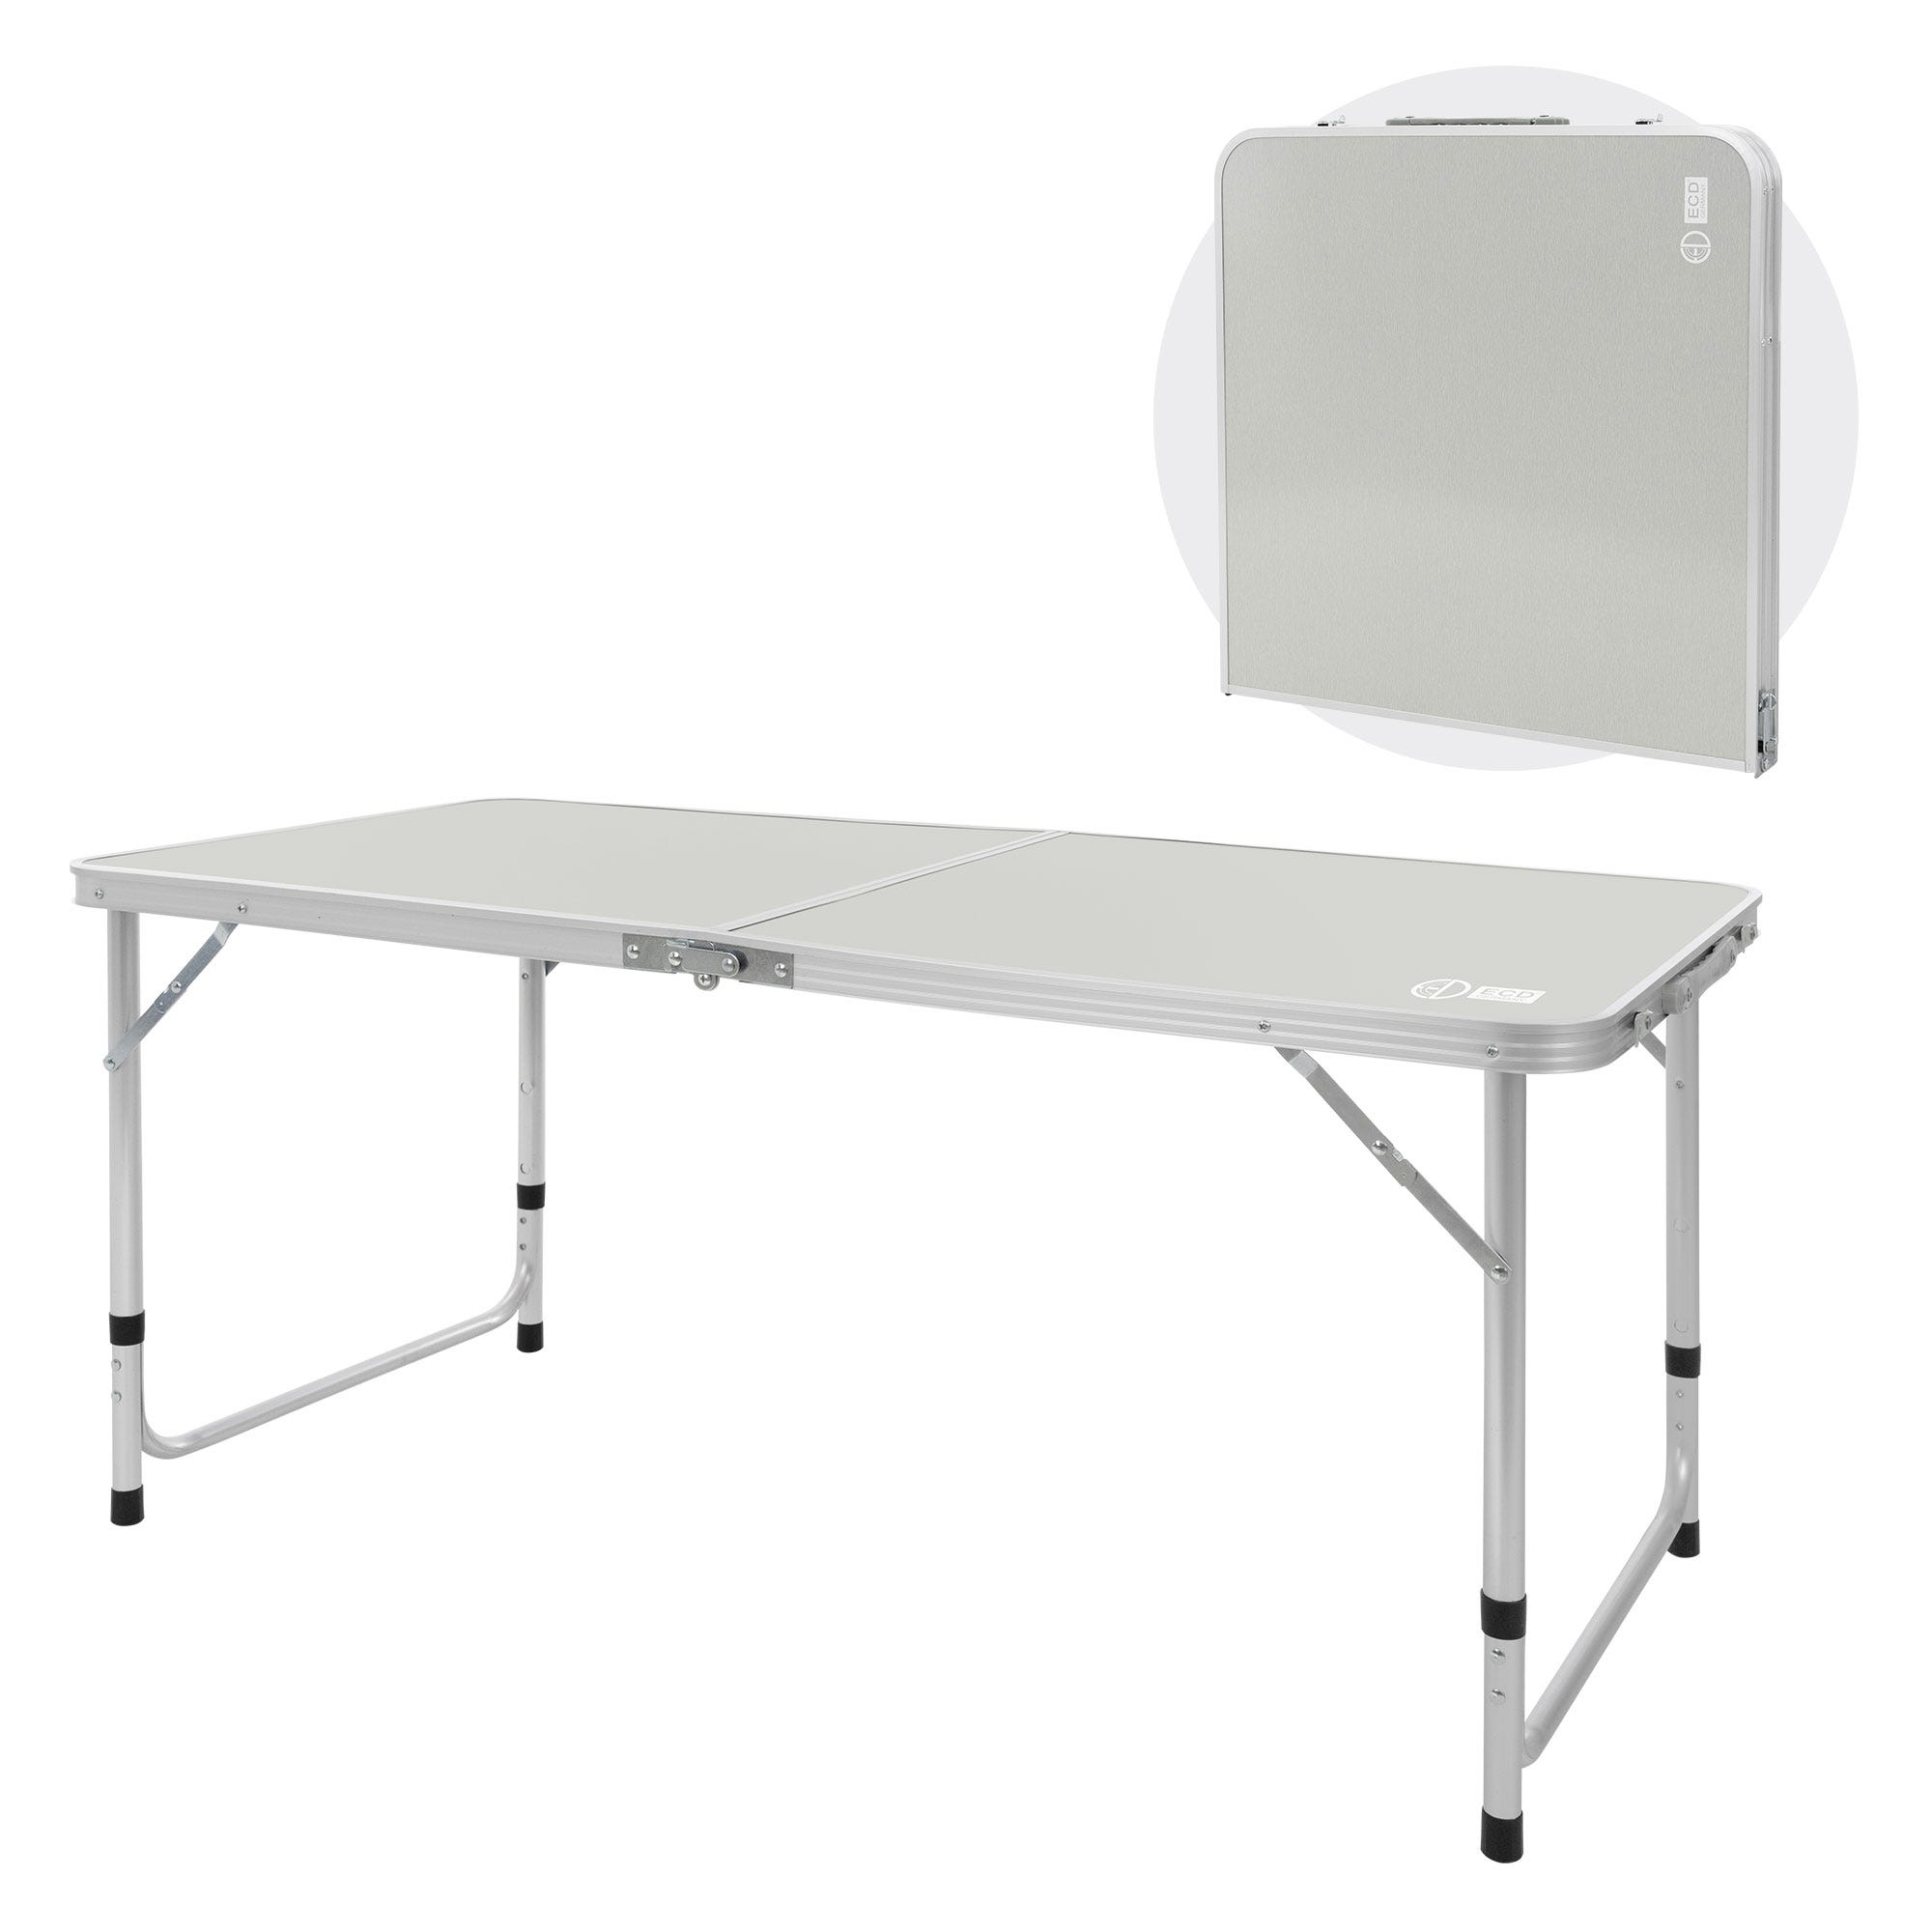 Table de camping Table pliante portable Table de camping pliante